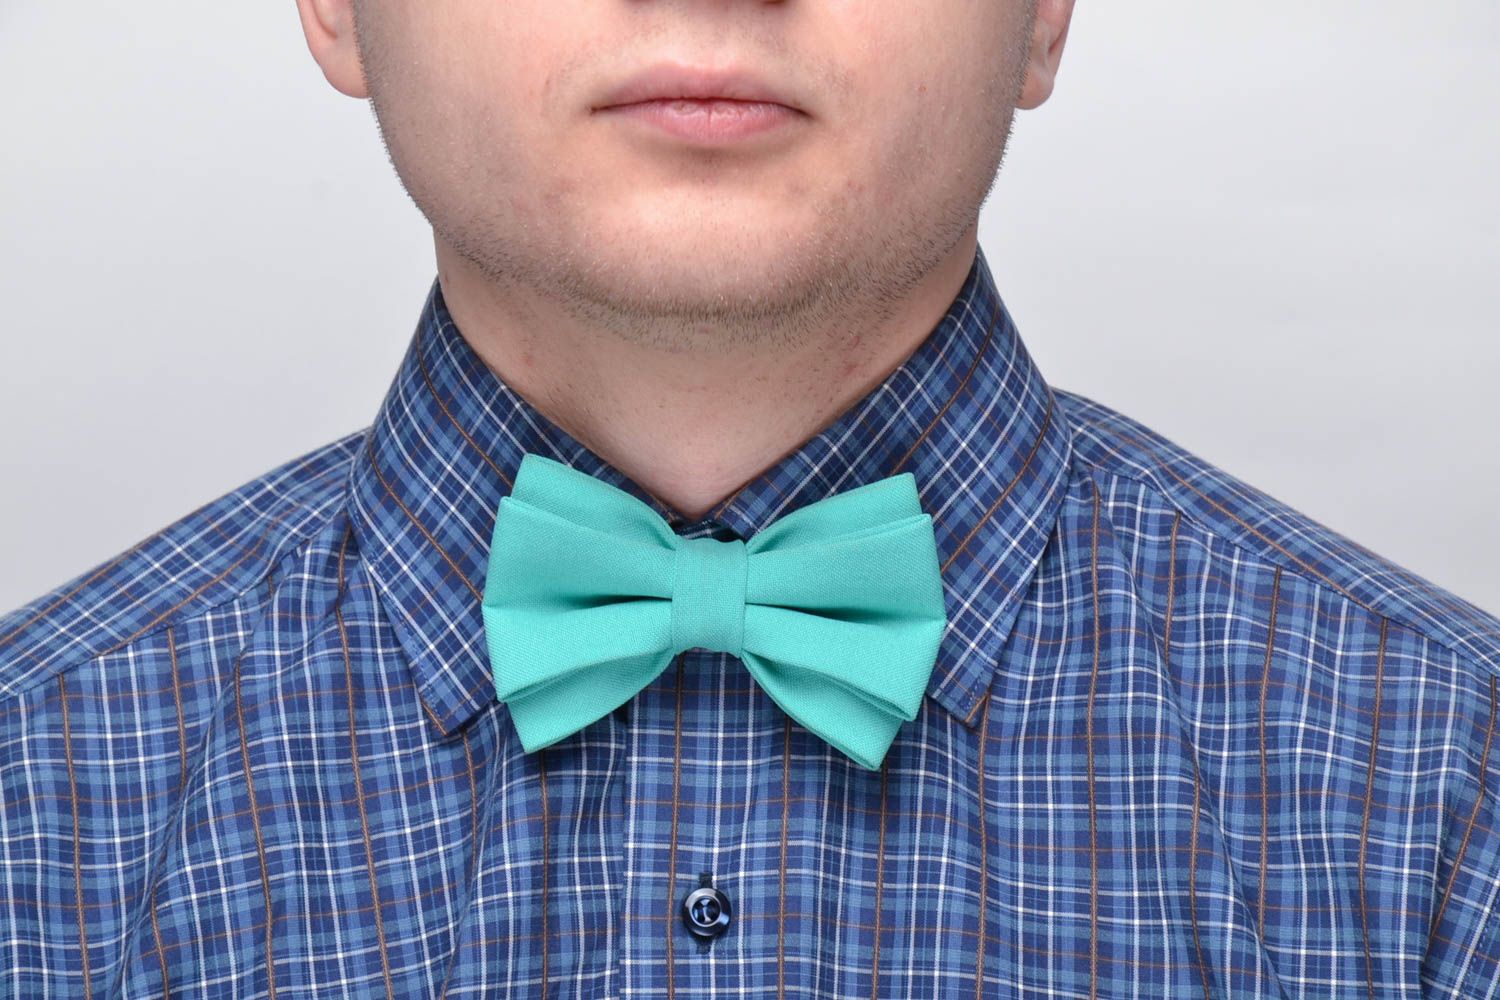 Turquoise bow tie photo 2